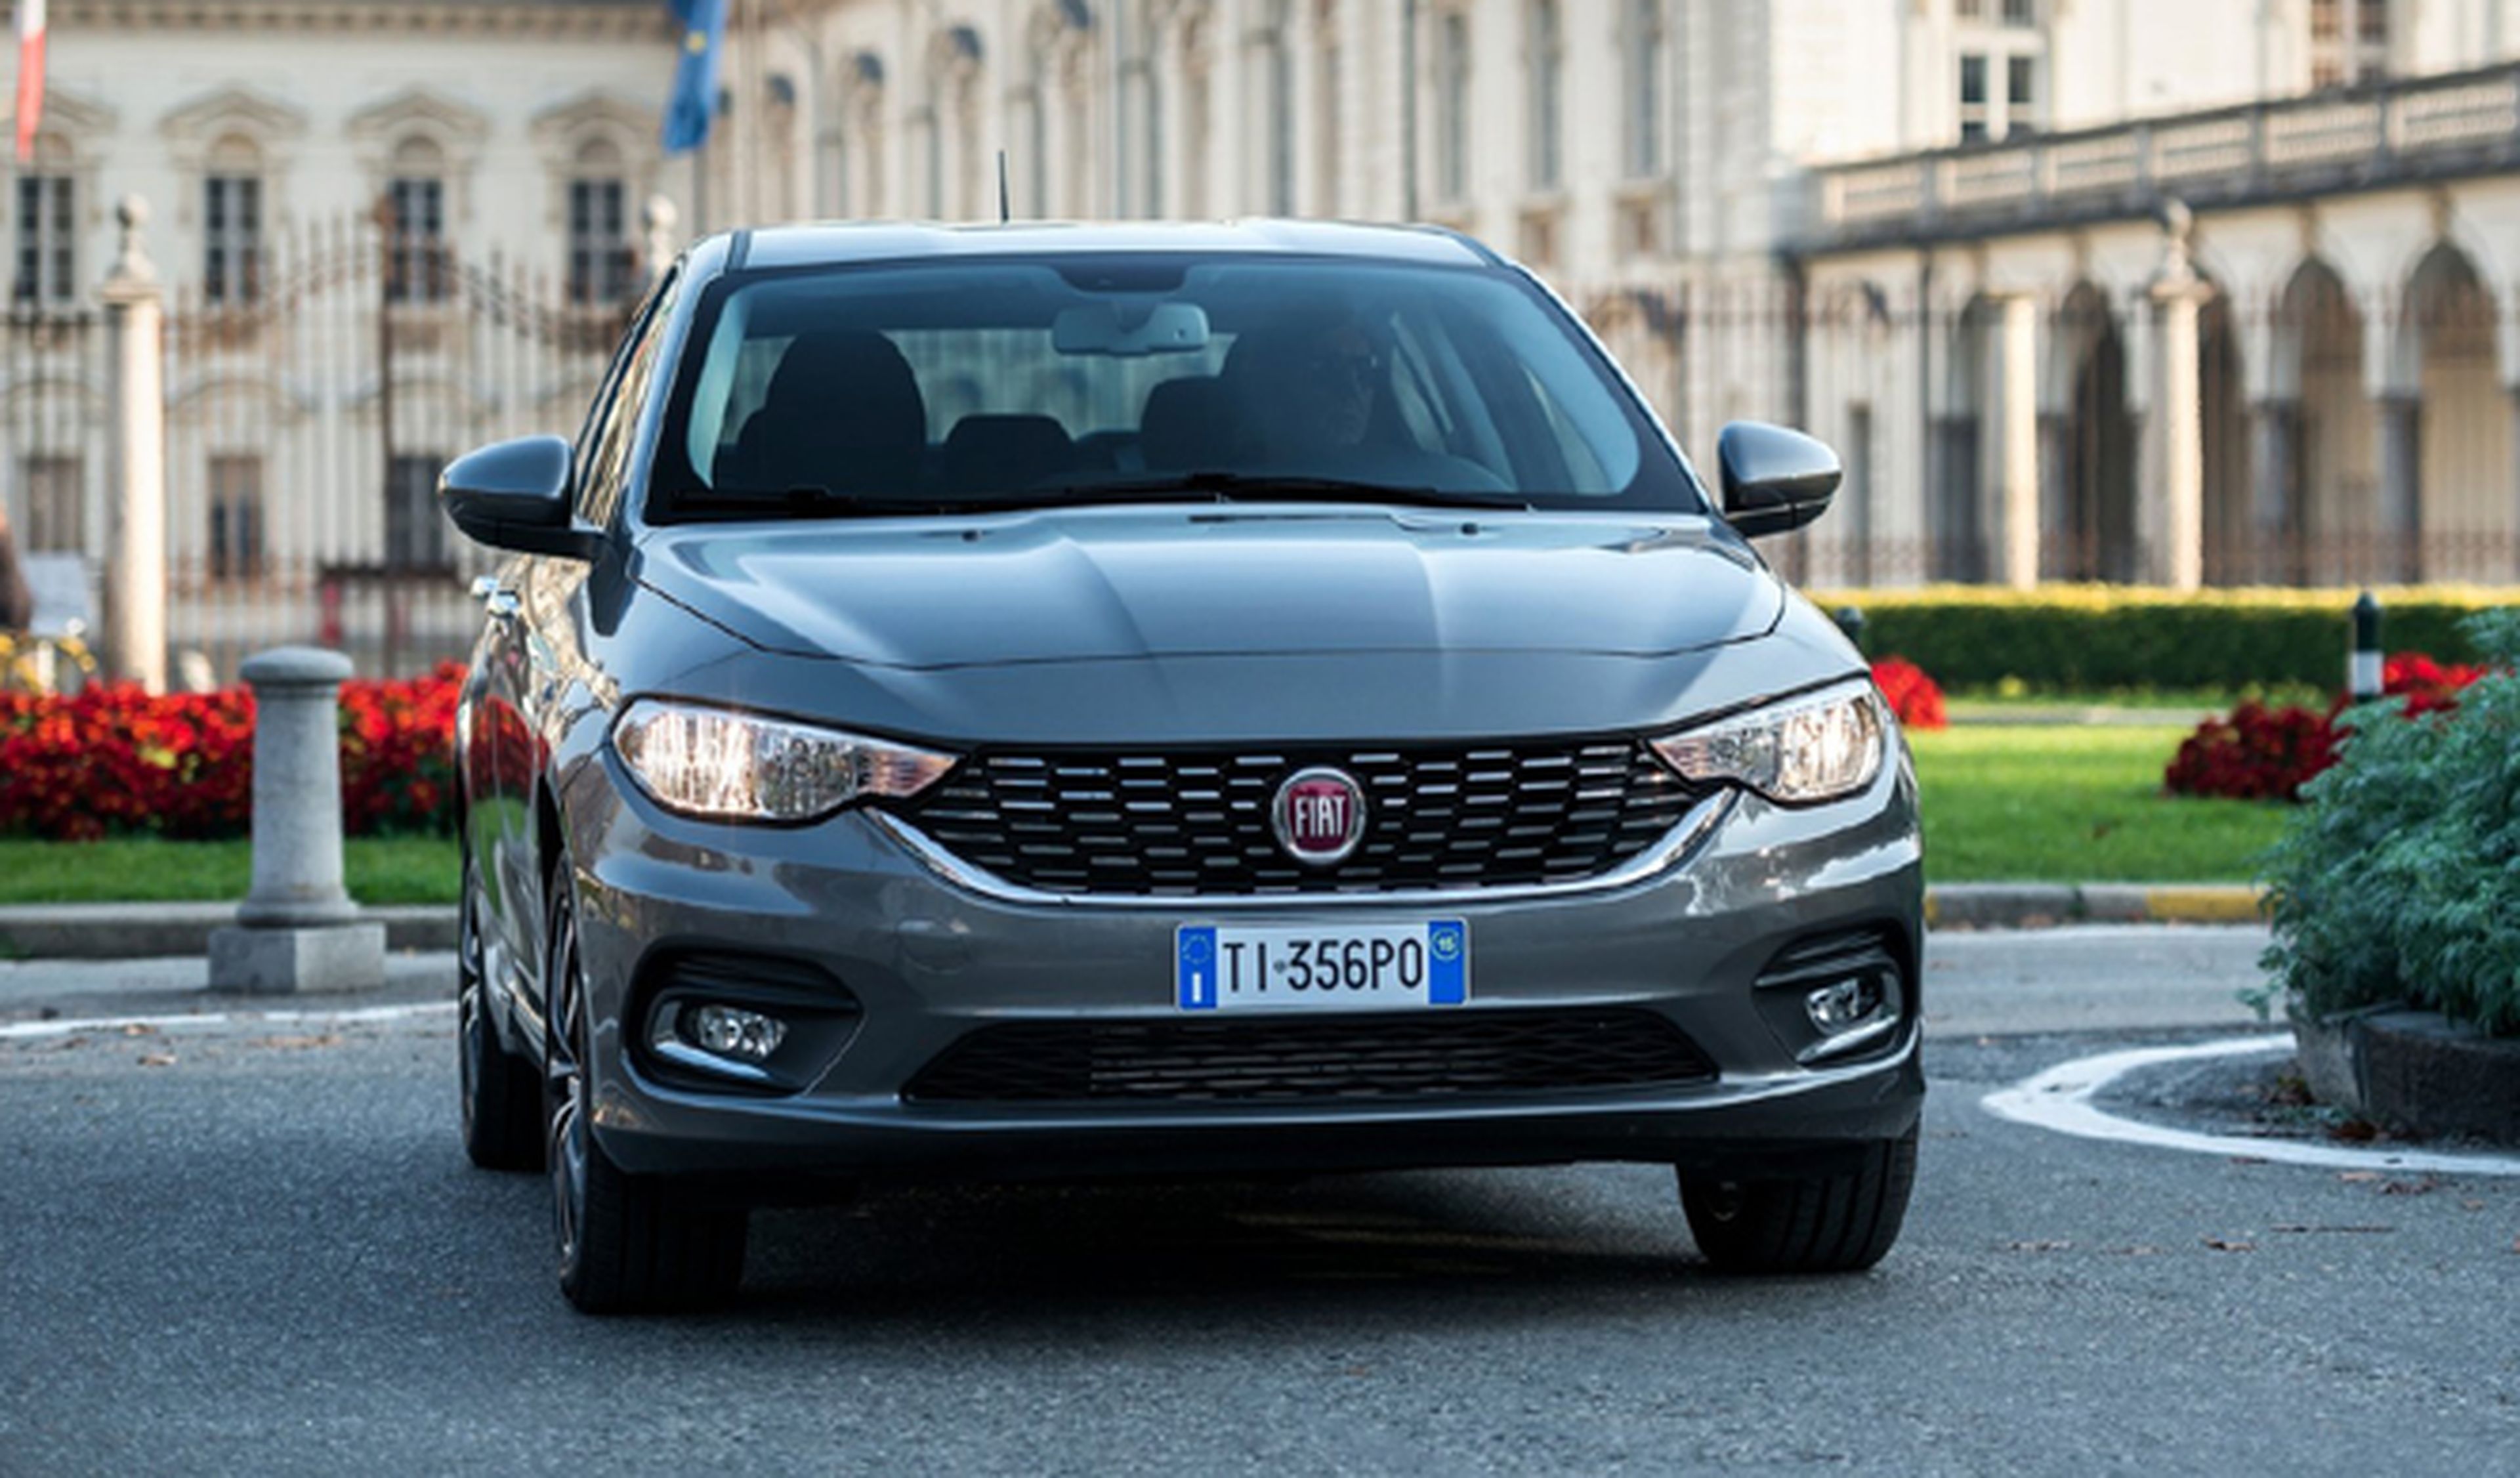 Fiat Tipo, ¿el nuevo coche de los Carabinieri?